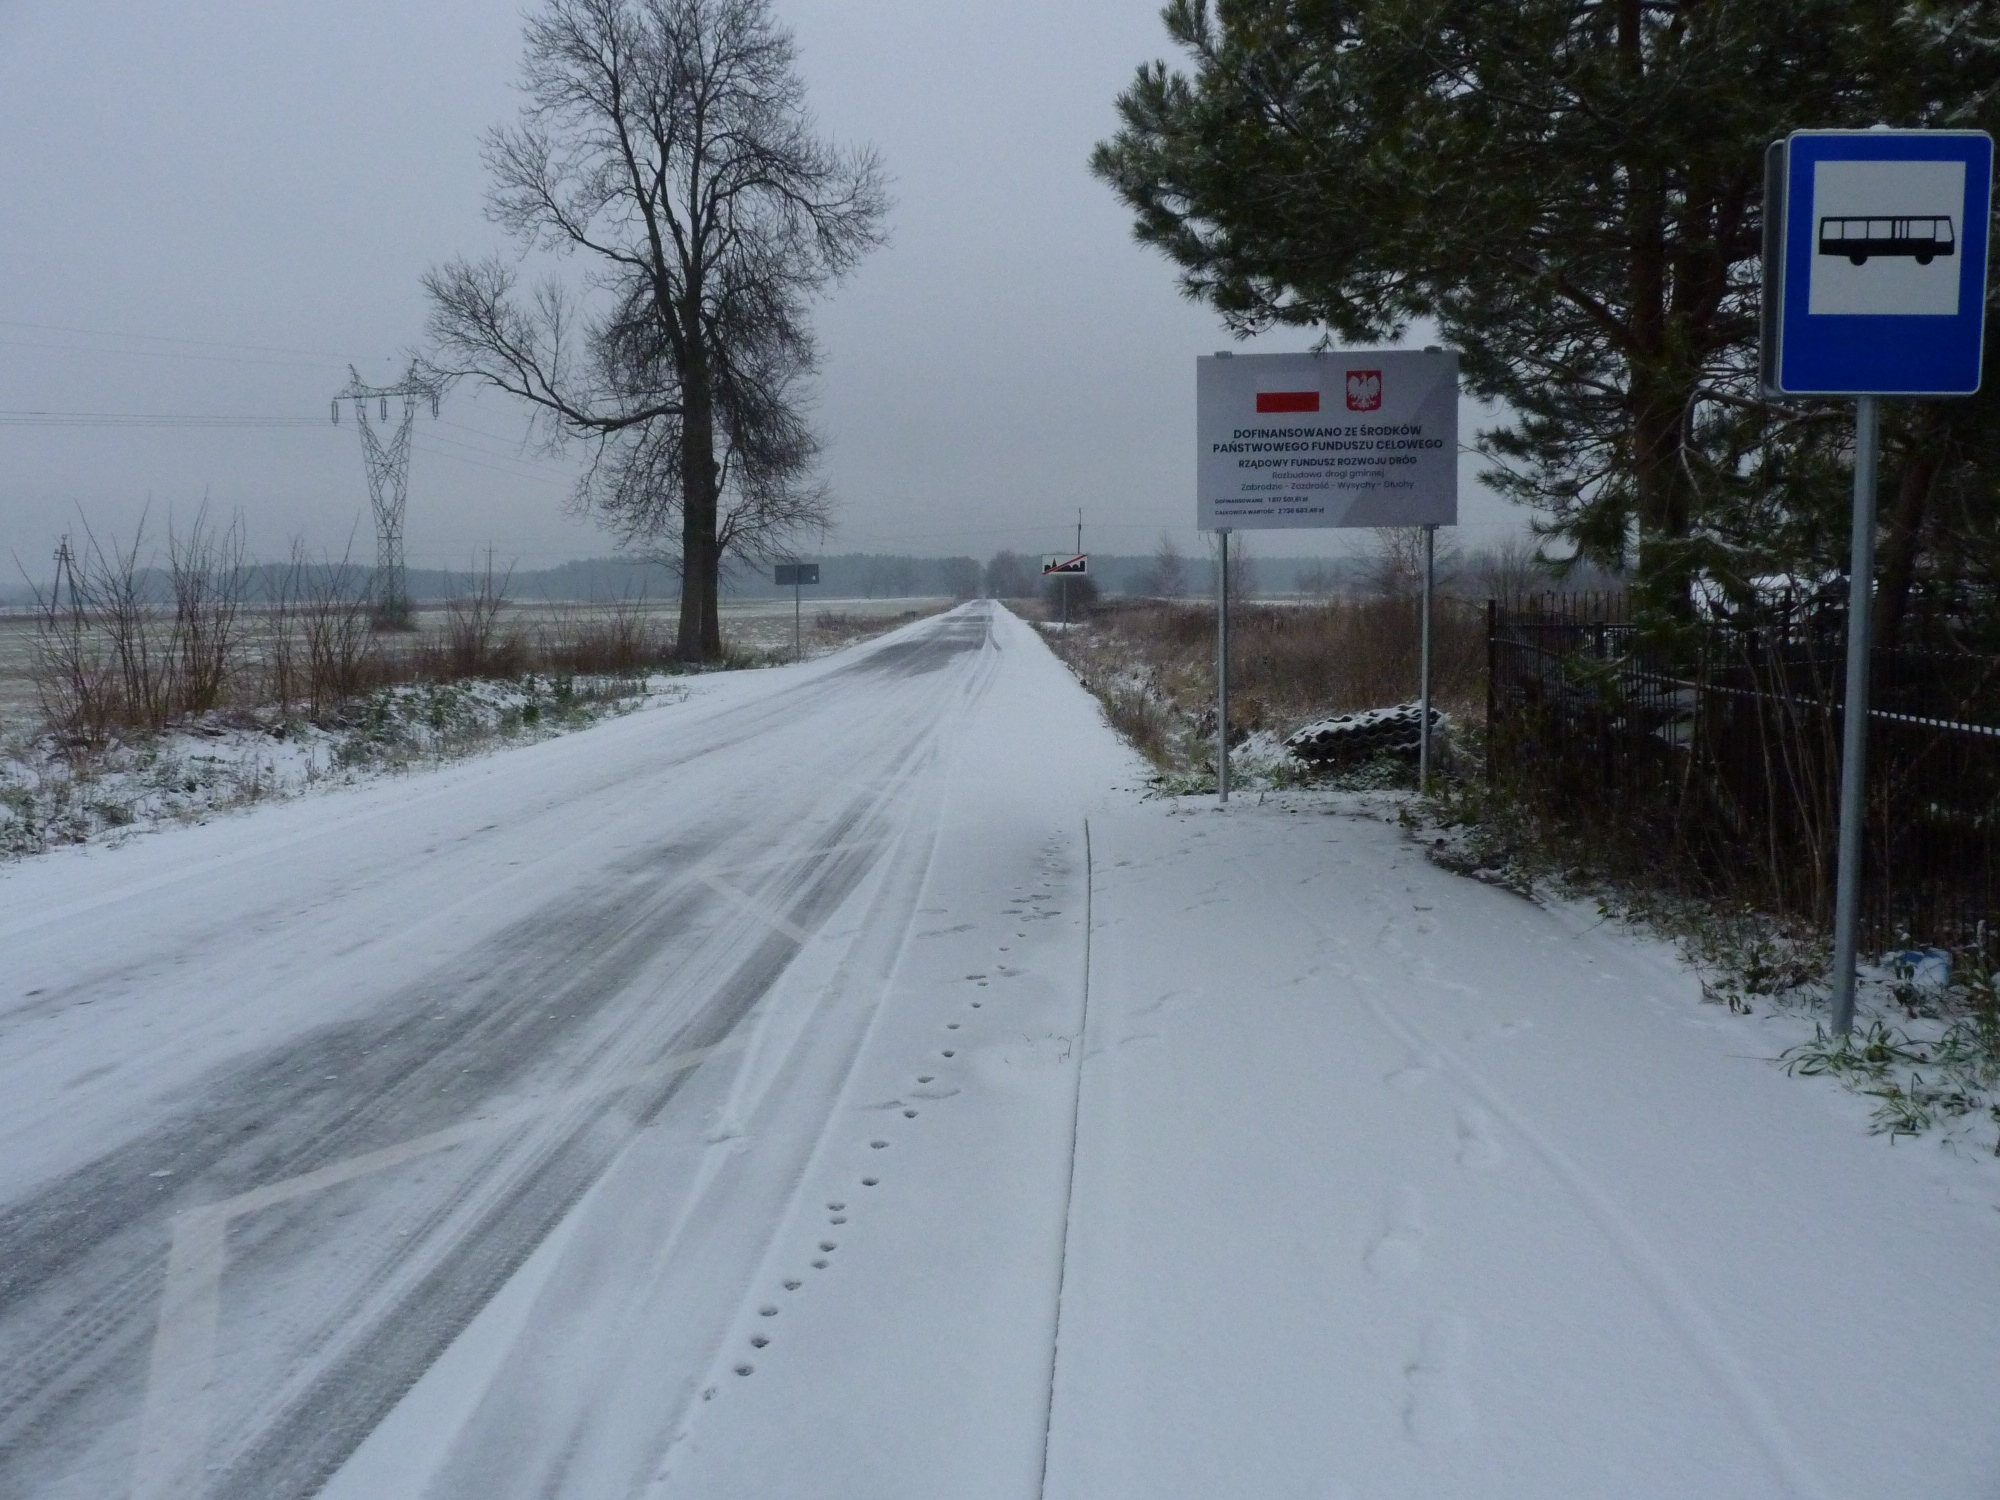 Droga asfaltowa pokryta śniegiem